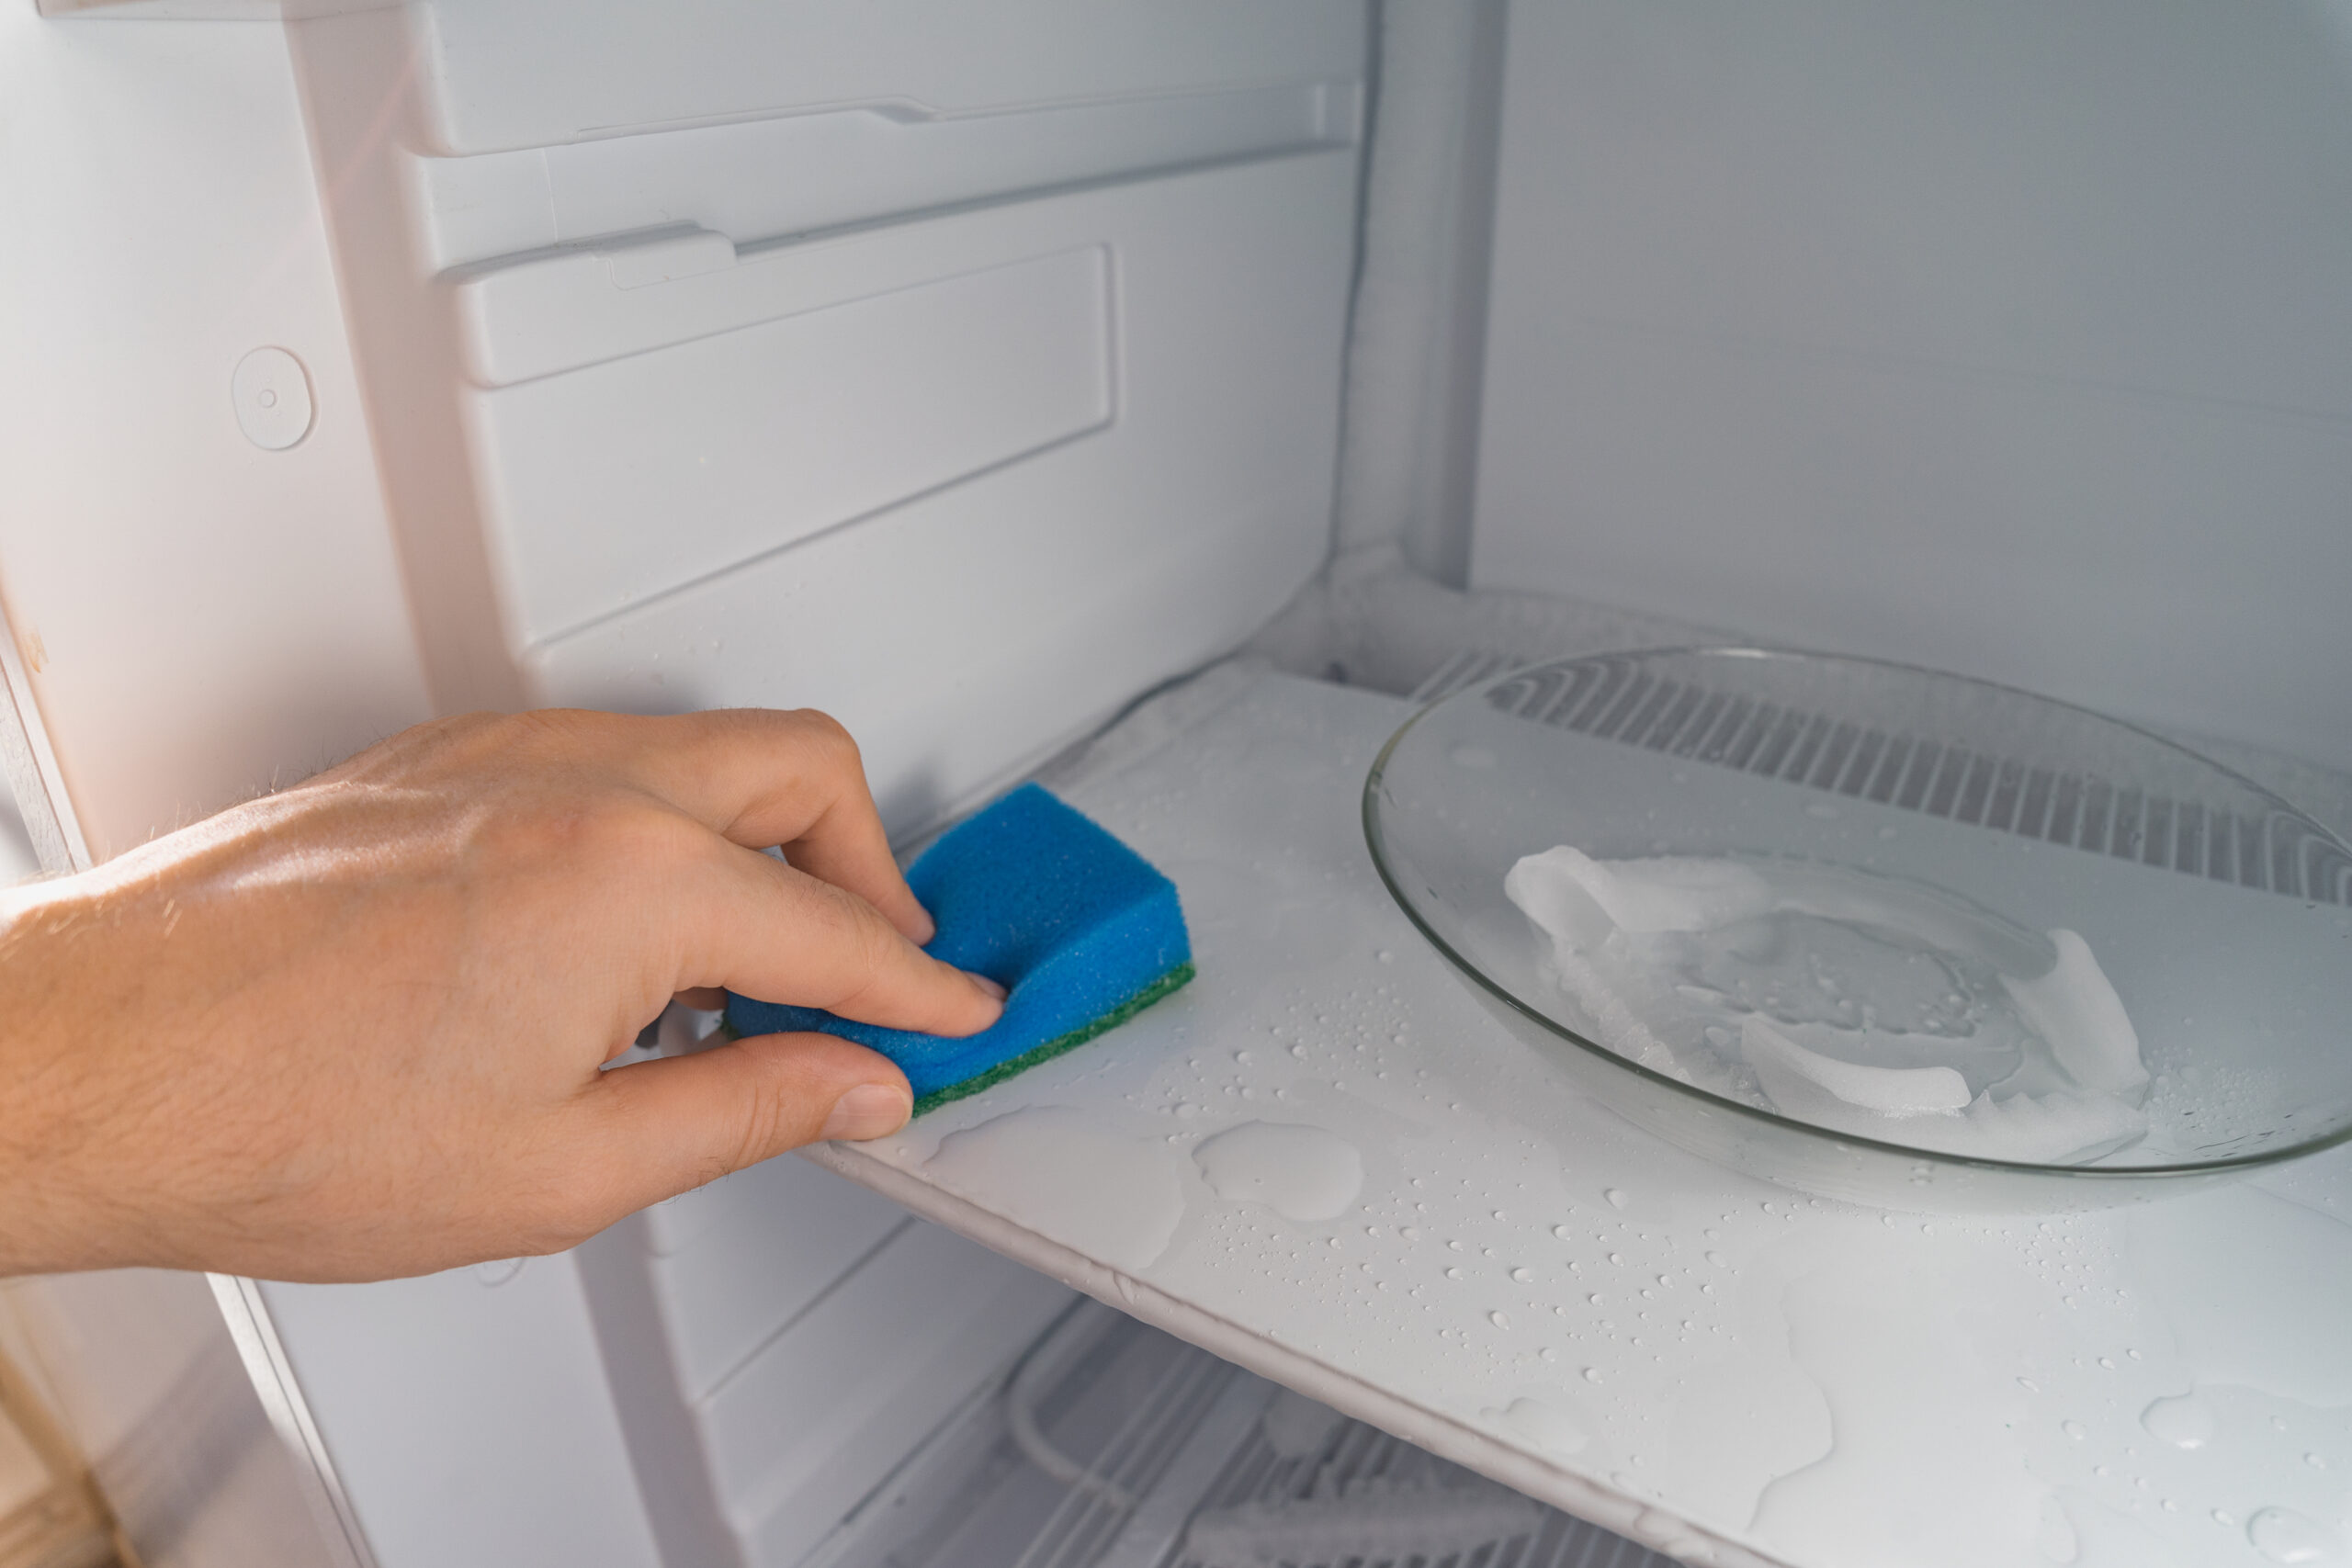 Persona eliminando el mal olor del congelador utilizando una bayeta y productos de limpieza